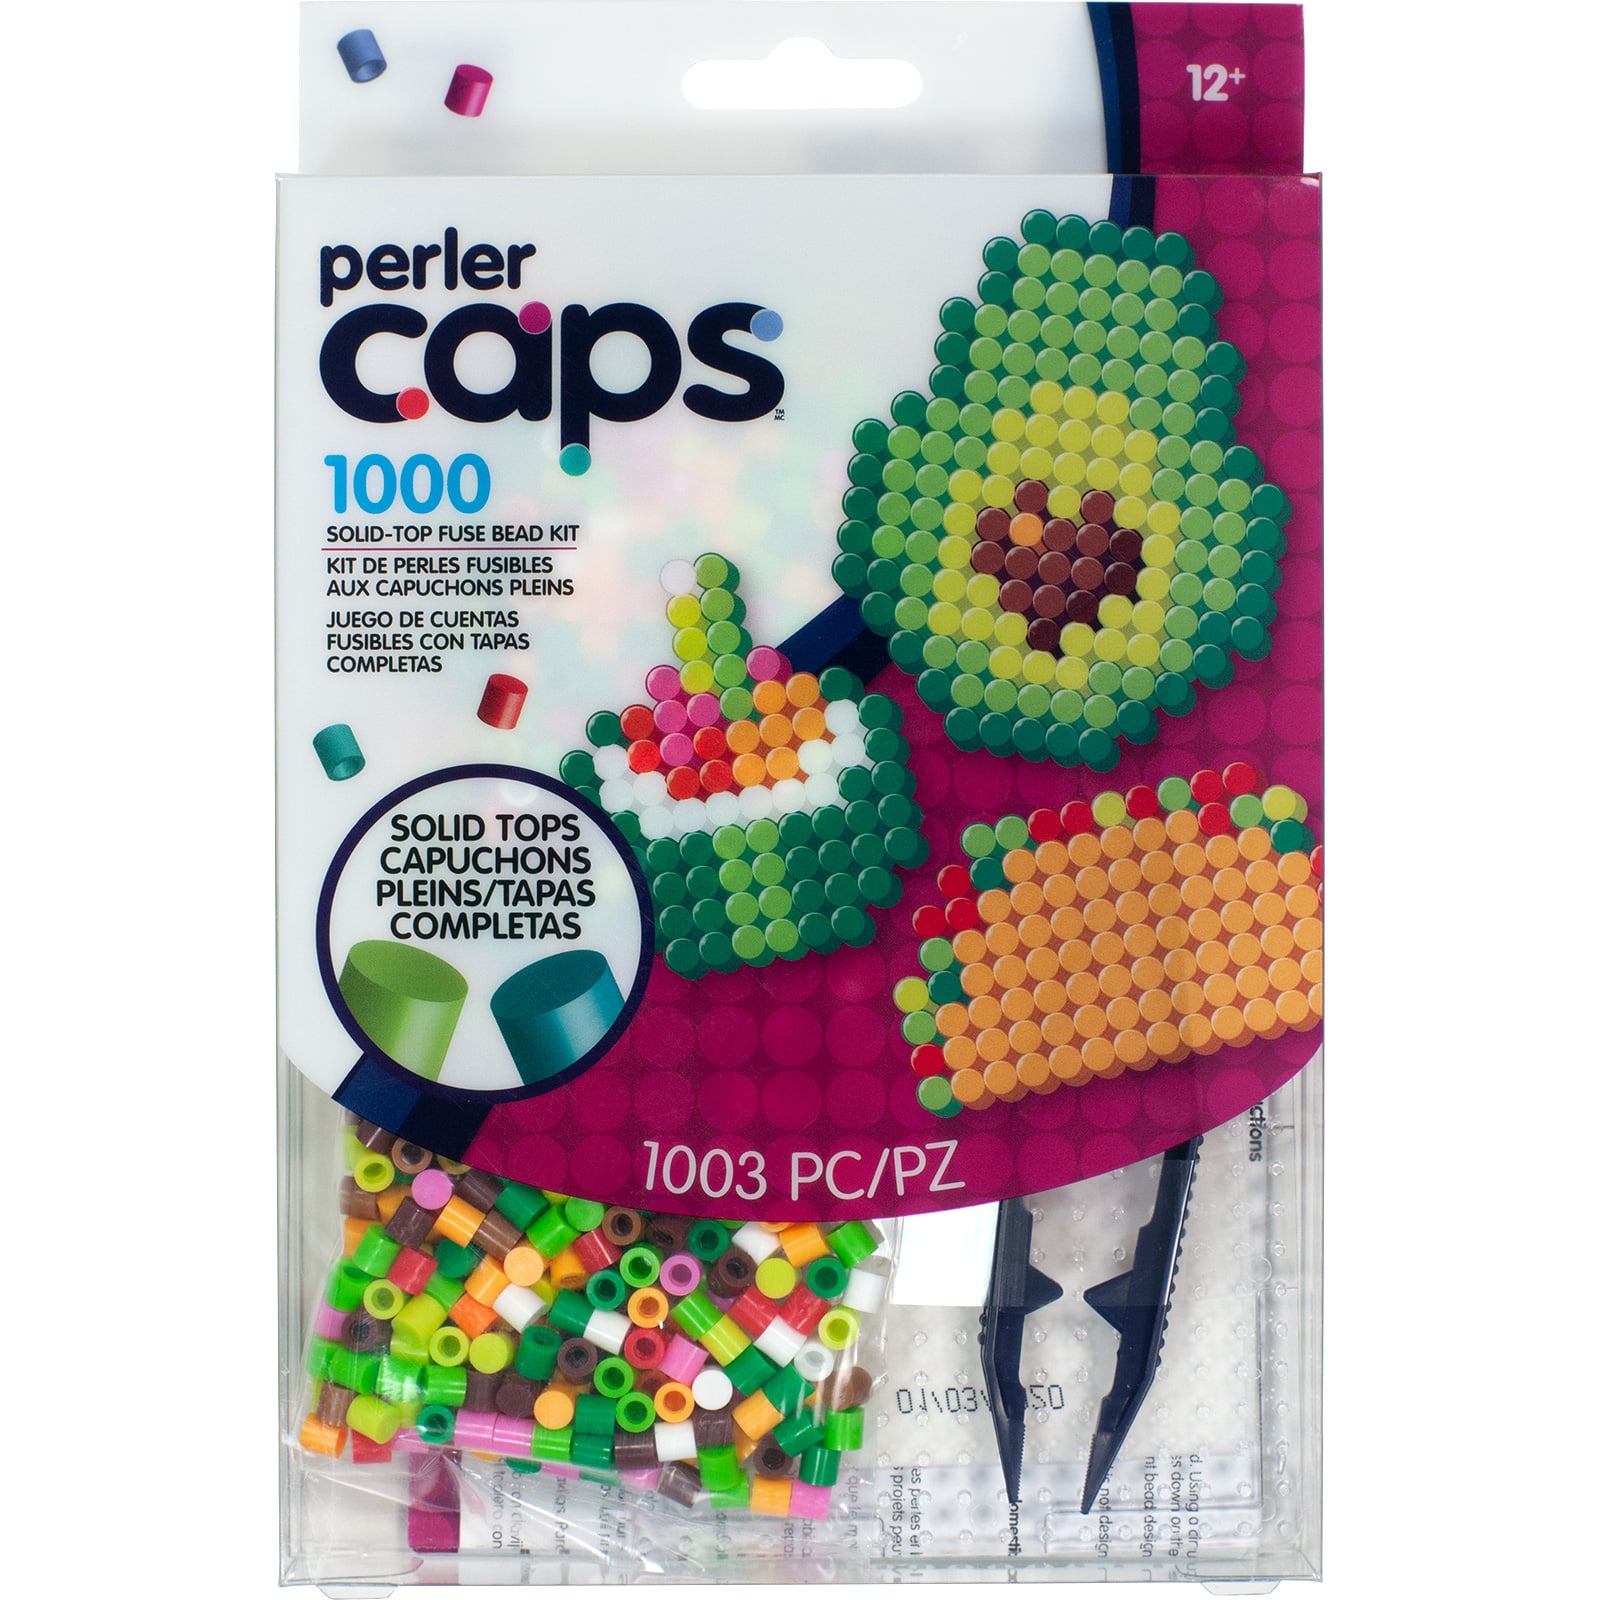 6 Pack: Perler Caps&#x2122; Food Starter Kit